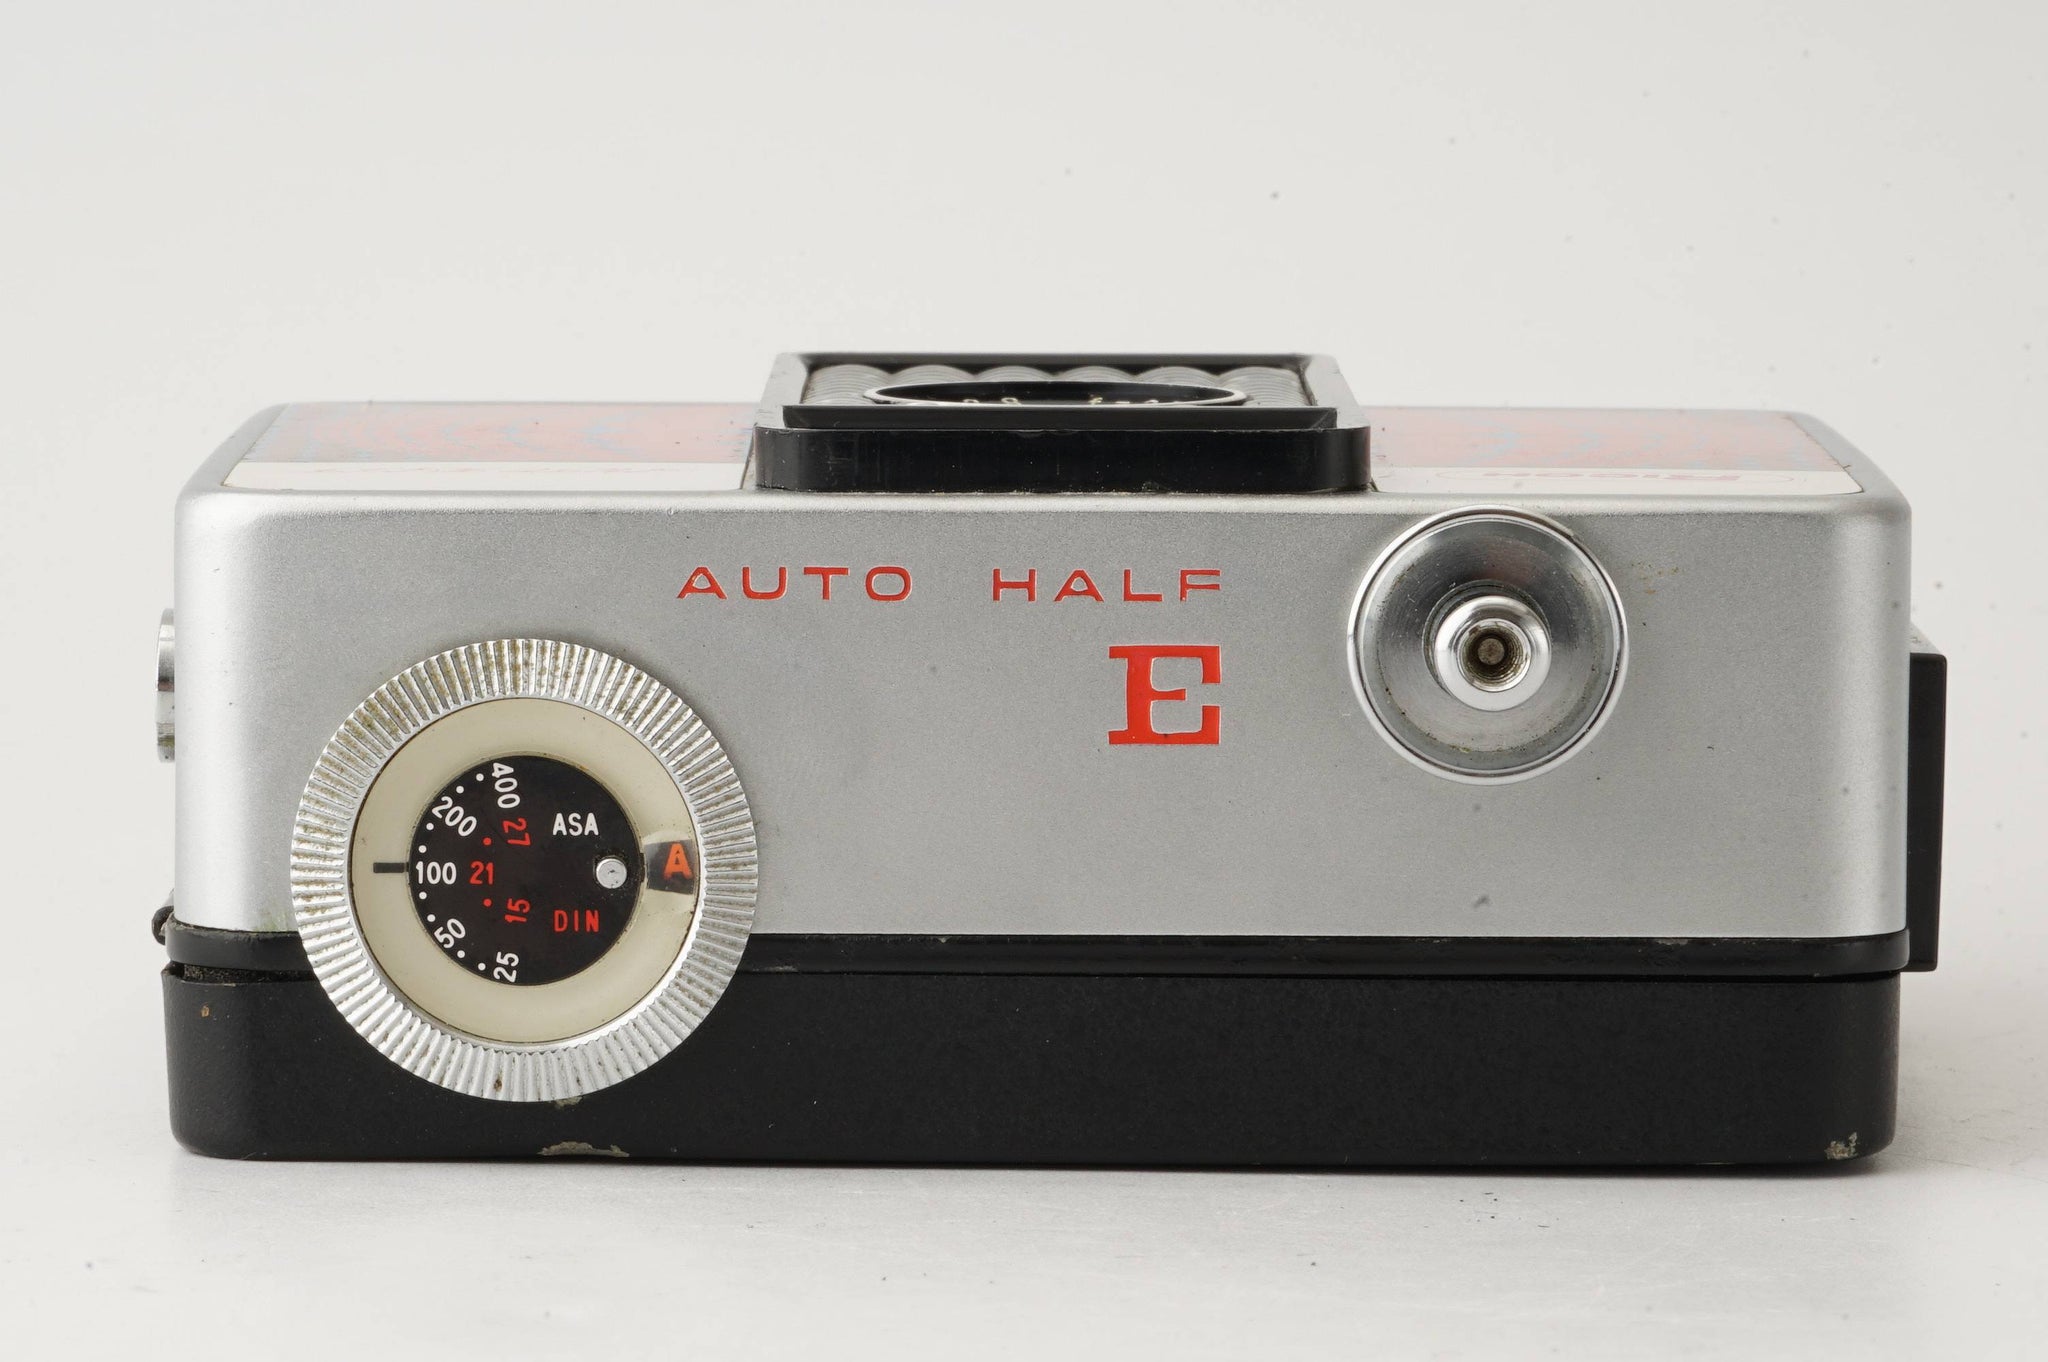 リコー Ricoh AUTO HALF E / 25mm F2.8 – Natural Camera / ナチュラル 